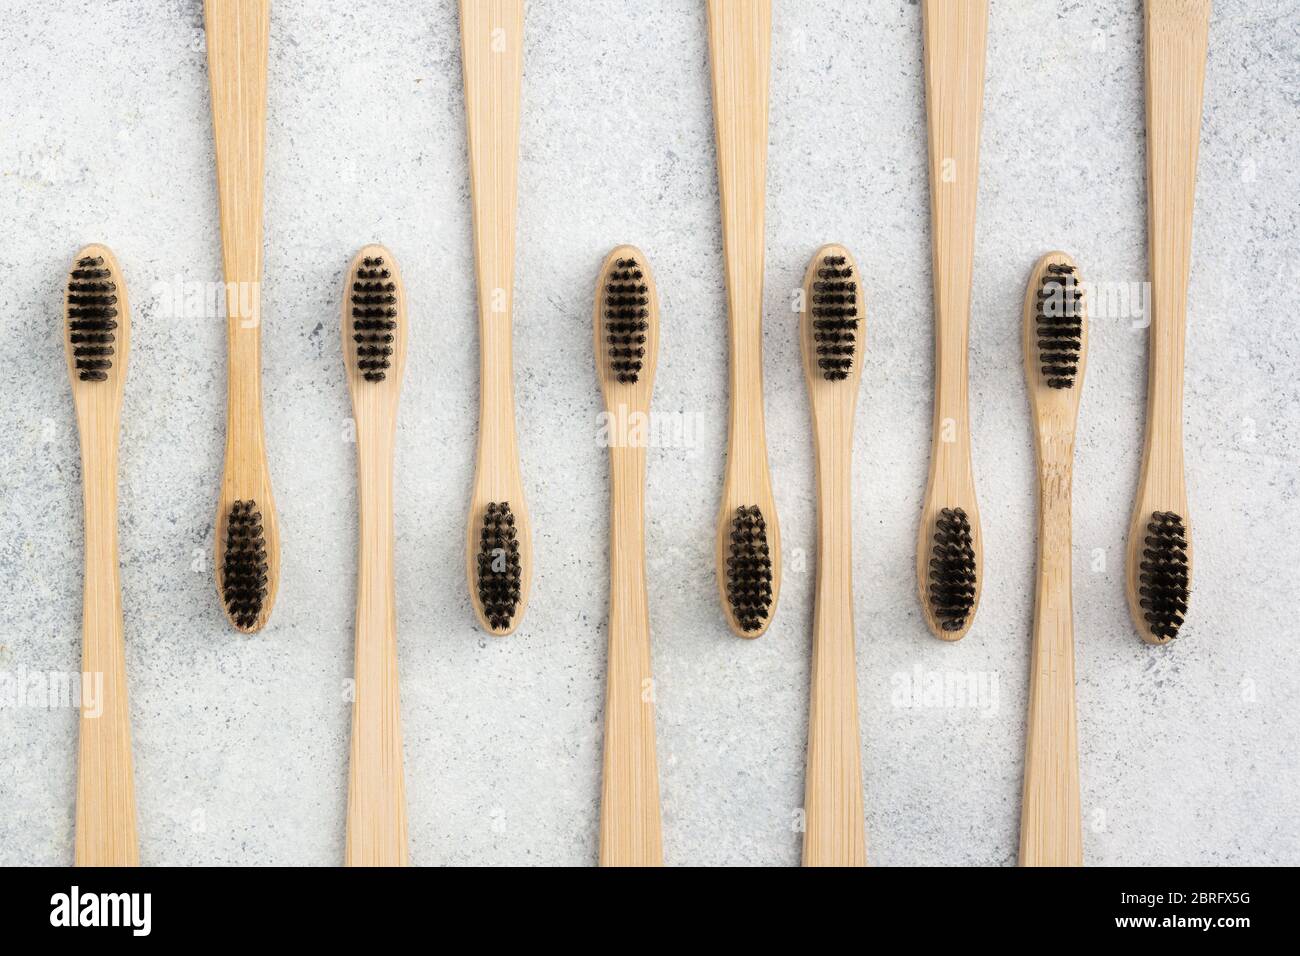 Zéro déchets eco friendly bamboo sur les brosses à dents blanches, vue du dessus, selective focus Banque D'Images